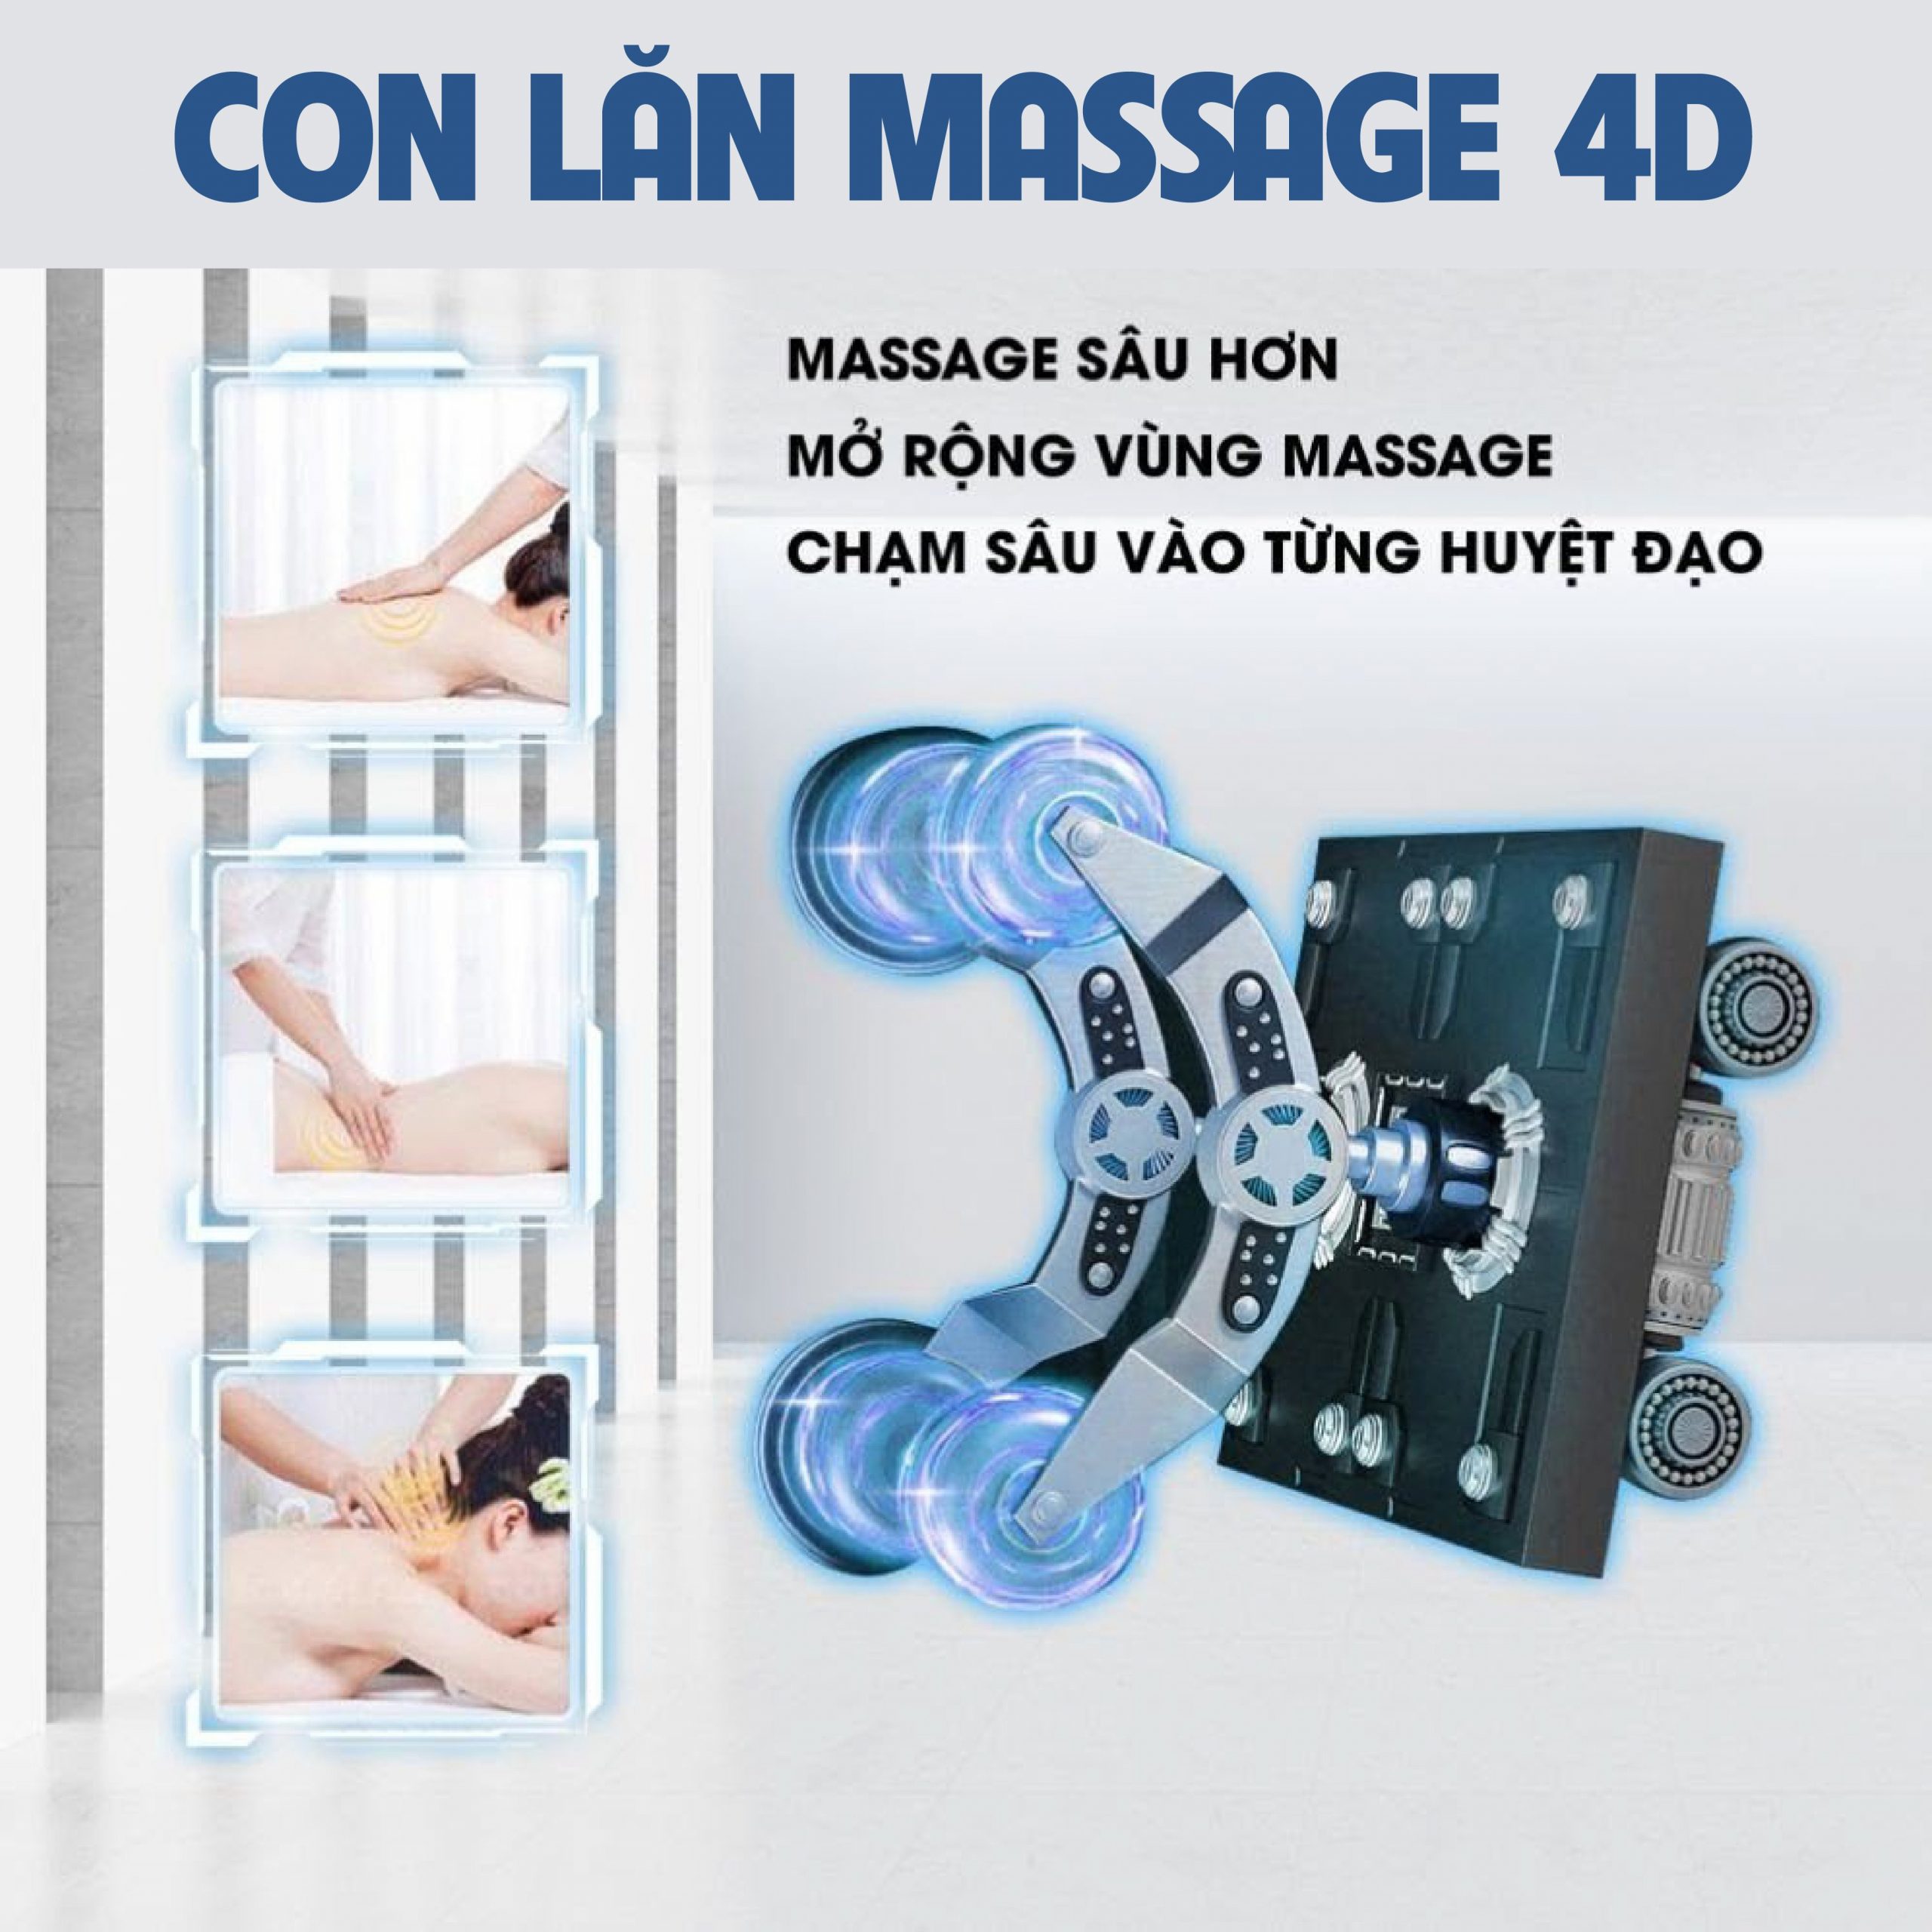 Con lăn massage 4D đánh sâu vào từng huyệt đạo giúp thúc đẩy quá trình massage toàn thân